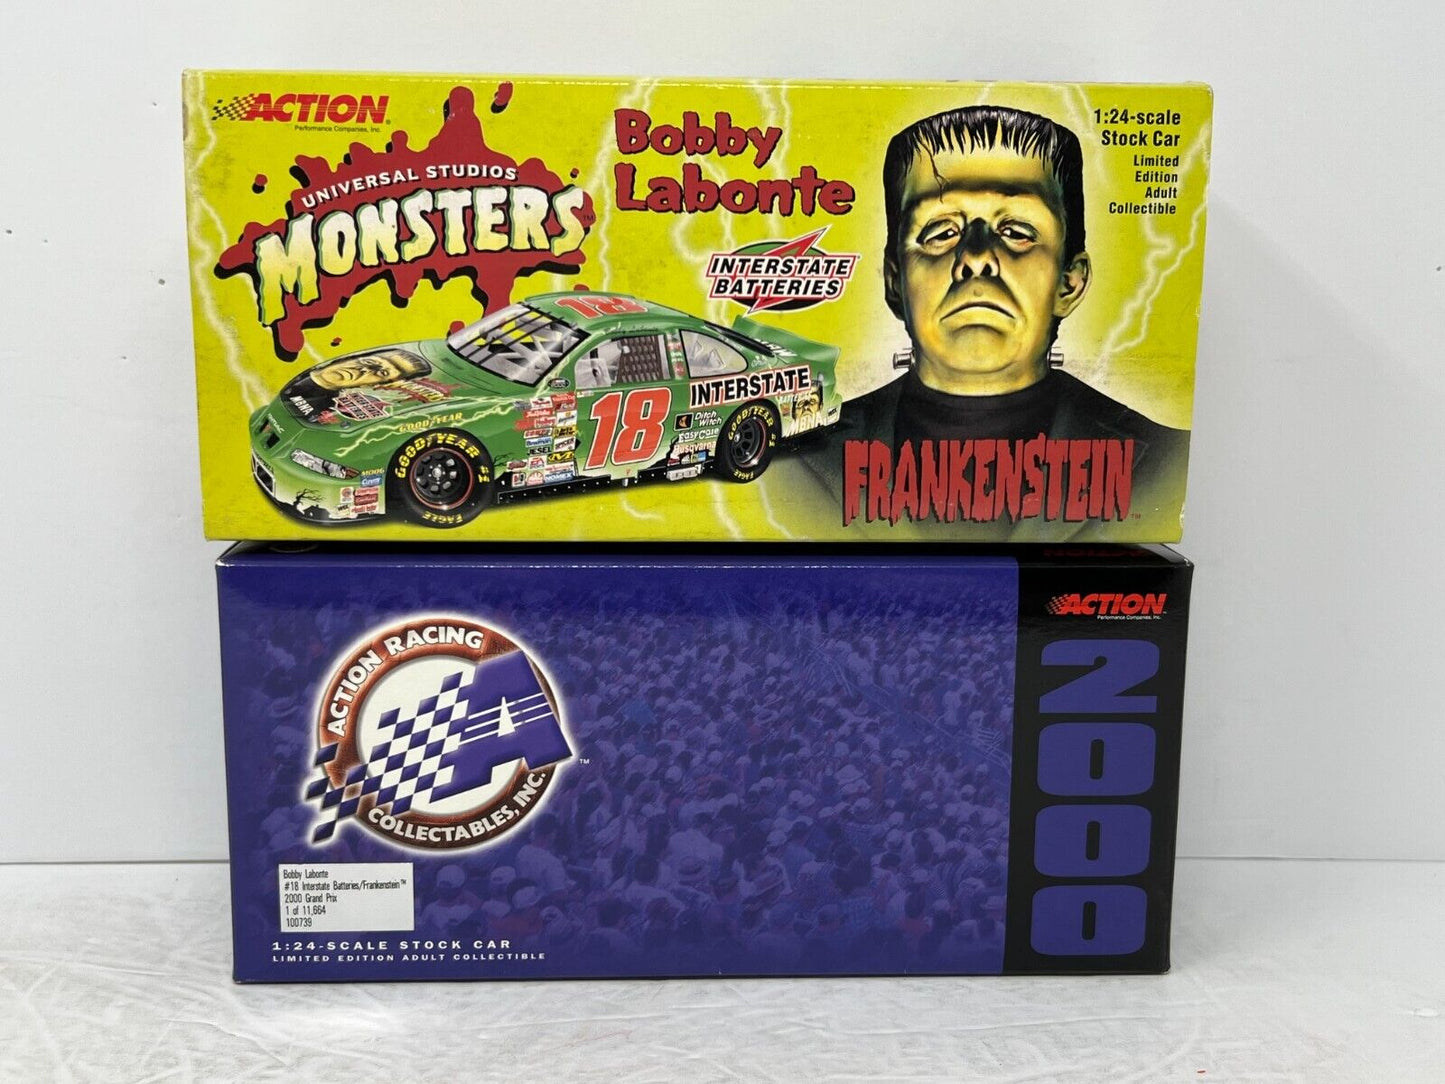 Action Nascar #18 Bobby Labonte Interstate Batteries Frankenstein 1:24 Diecast